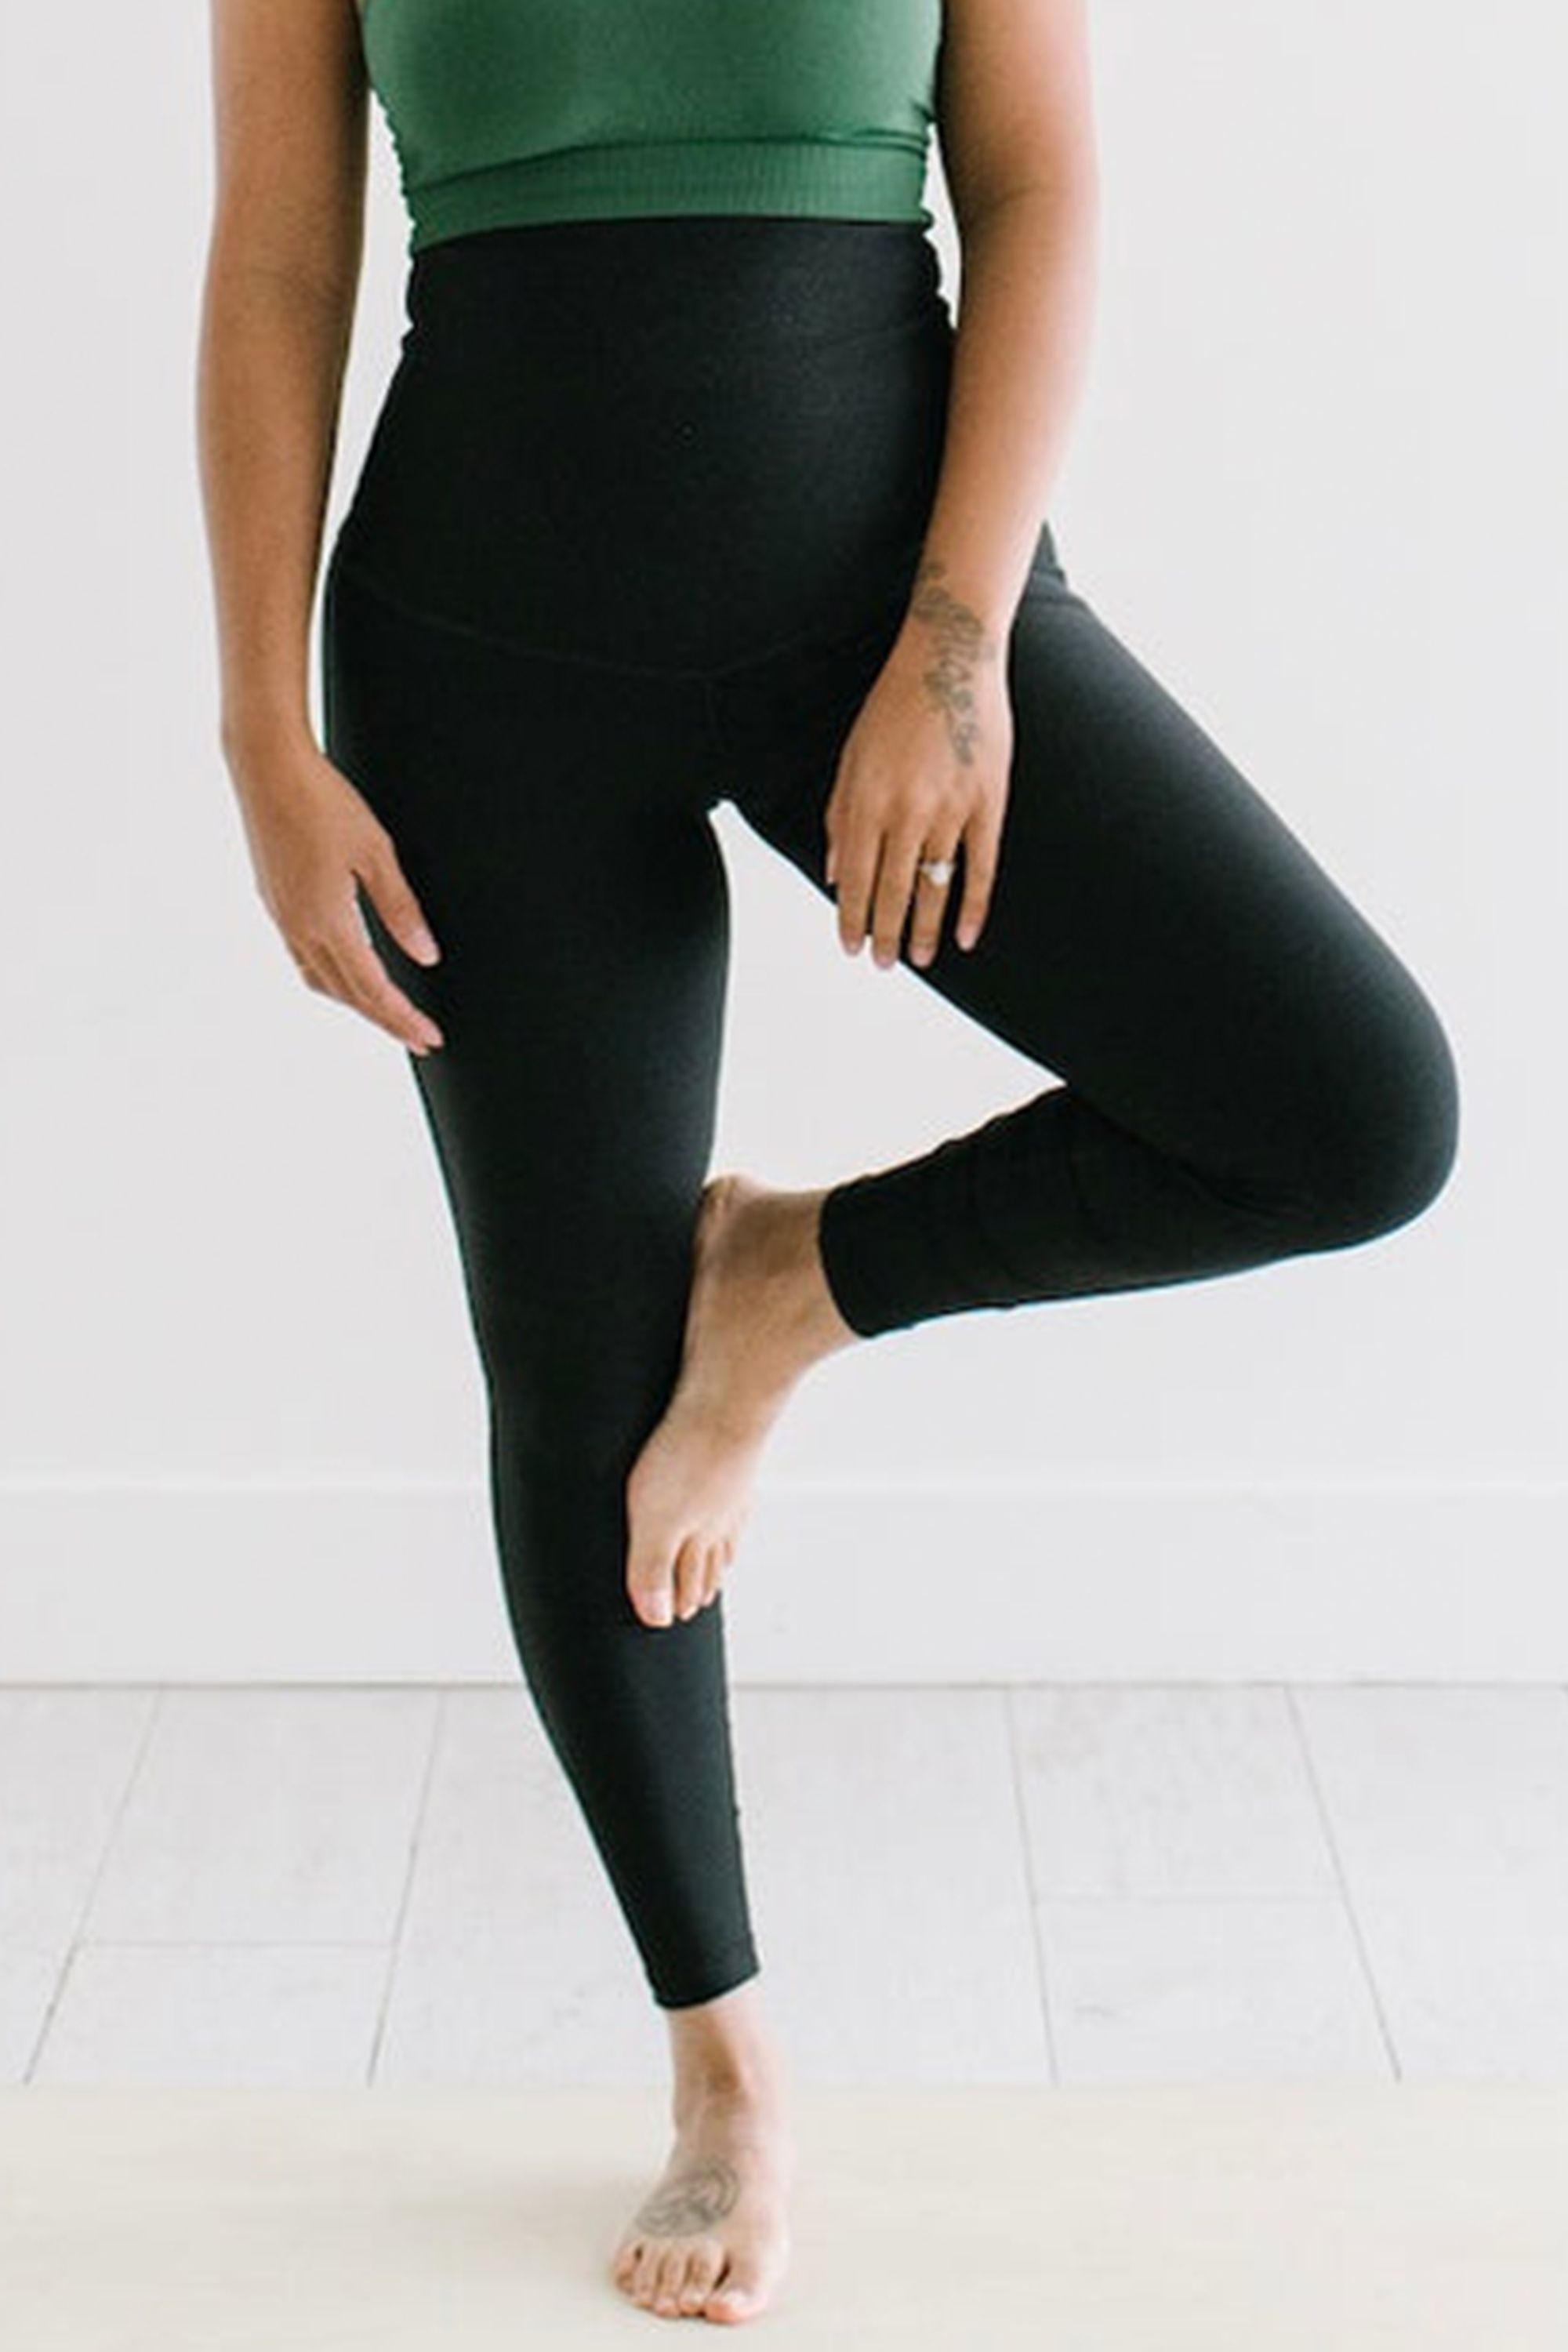 Sculpting Yoga Pants Leggings (Grey) - Curve Hugging Workout Leggings - S |  eBay